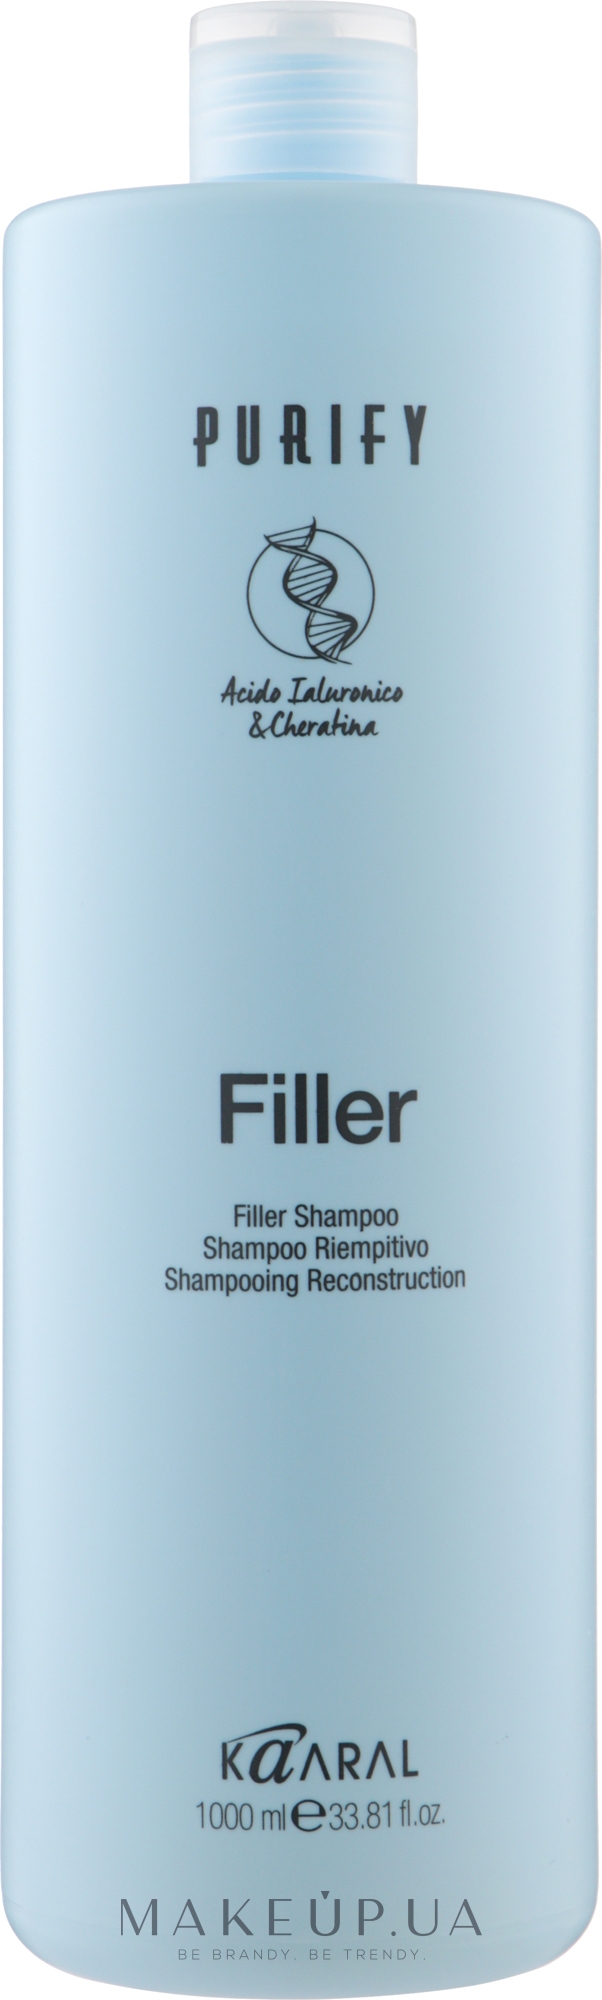 Шампунь-філер для волосся з кератином і гіалуроновою кислотою - Kaaral Purify Filler Shampoo — фото 1000ml